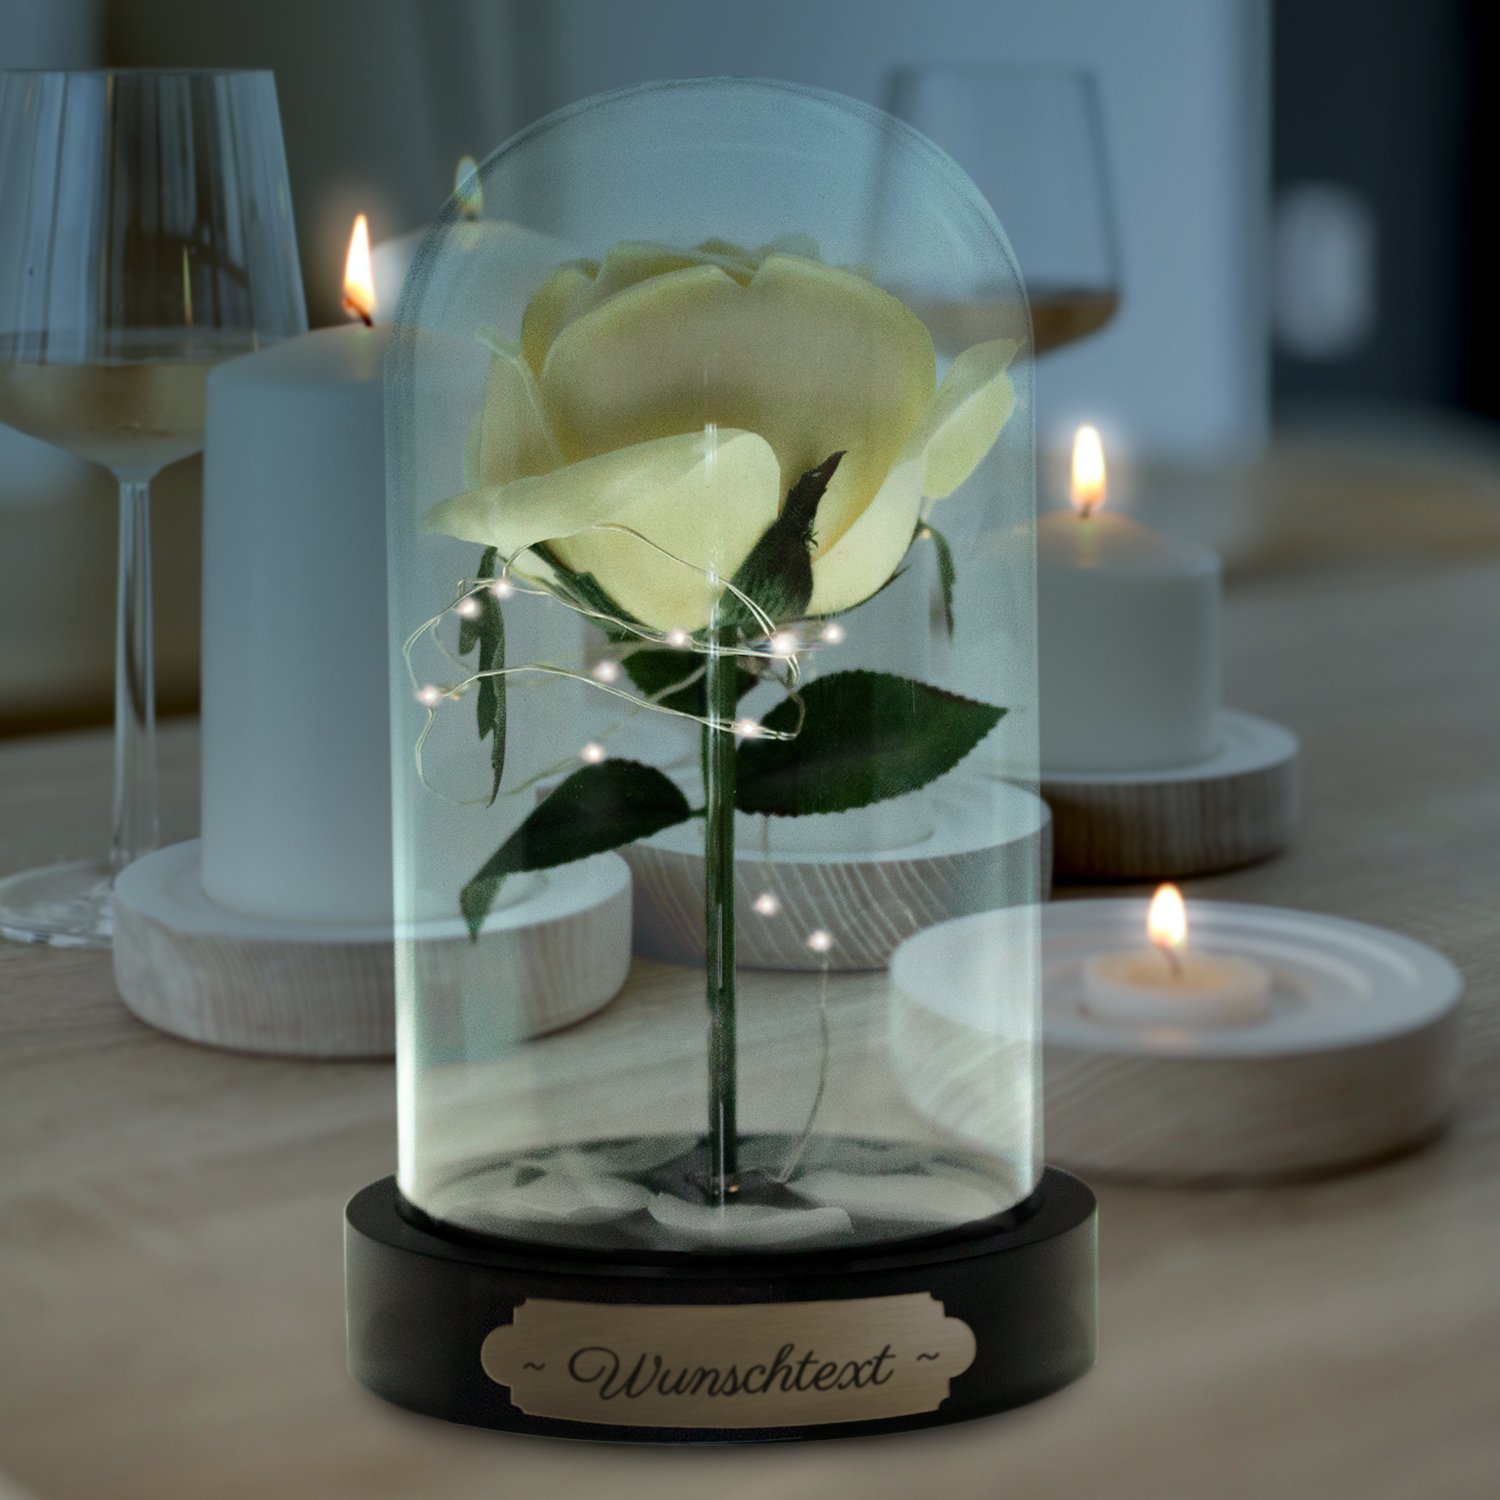 Ewige Rose im Glas mit  Personalisierung